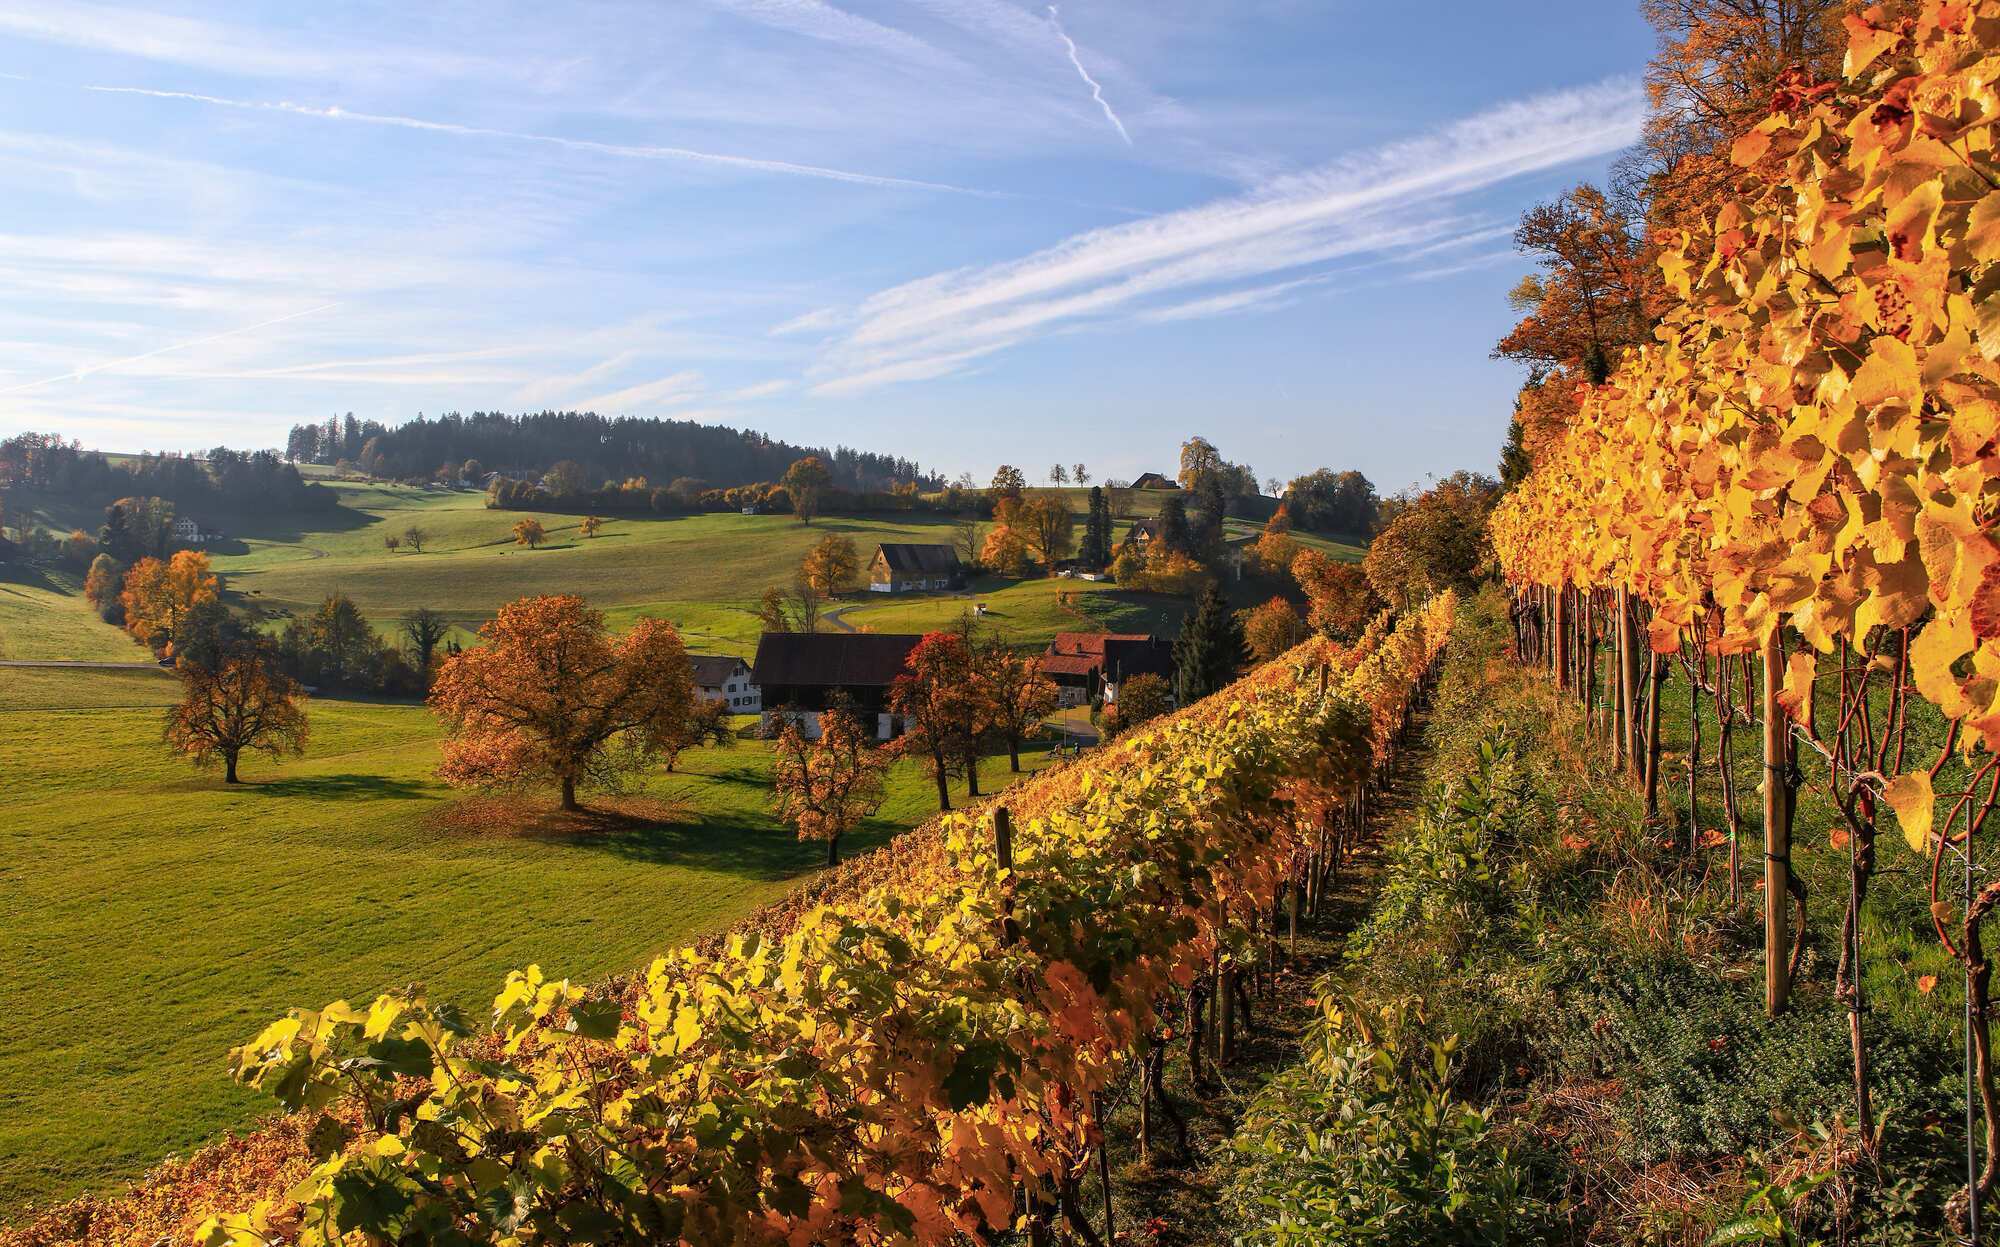 Вино и путешествие: лучшие винные регионы Европы